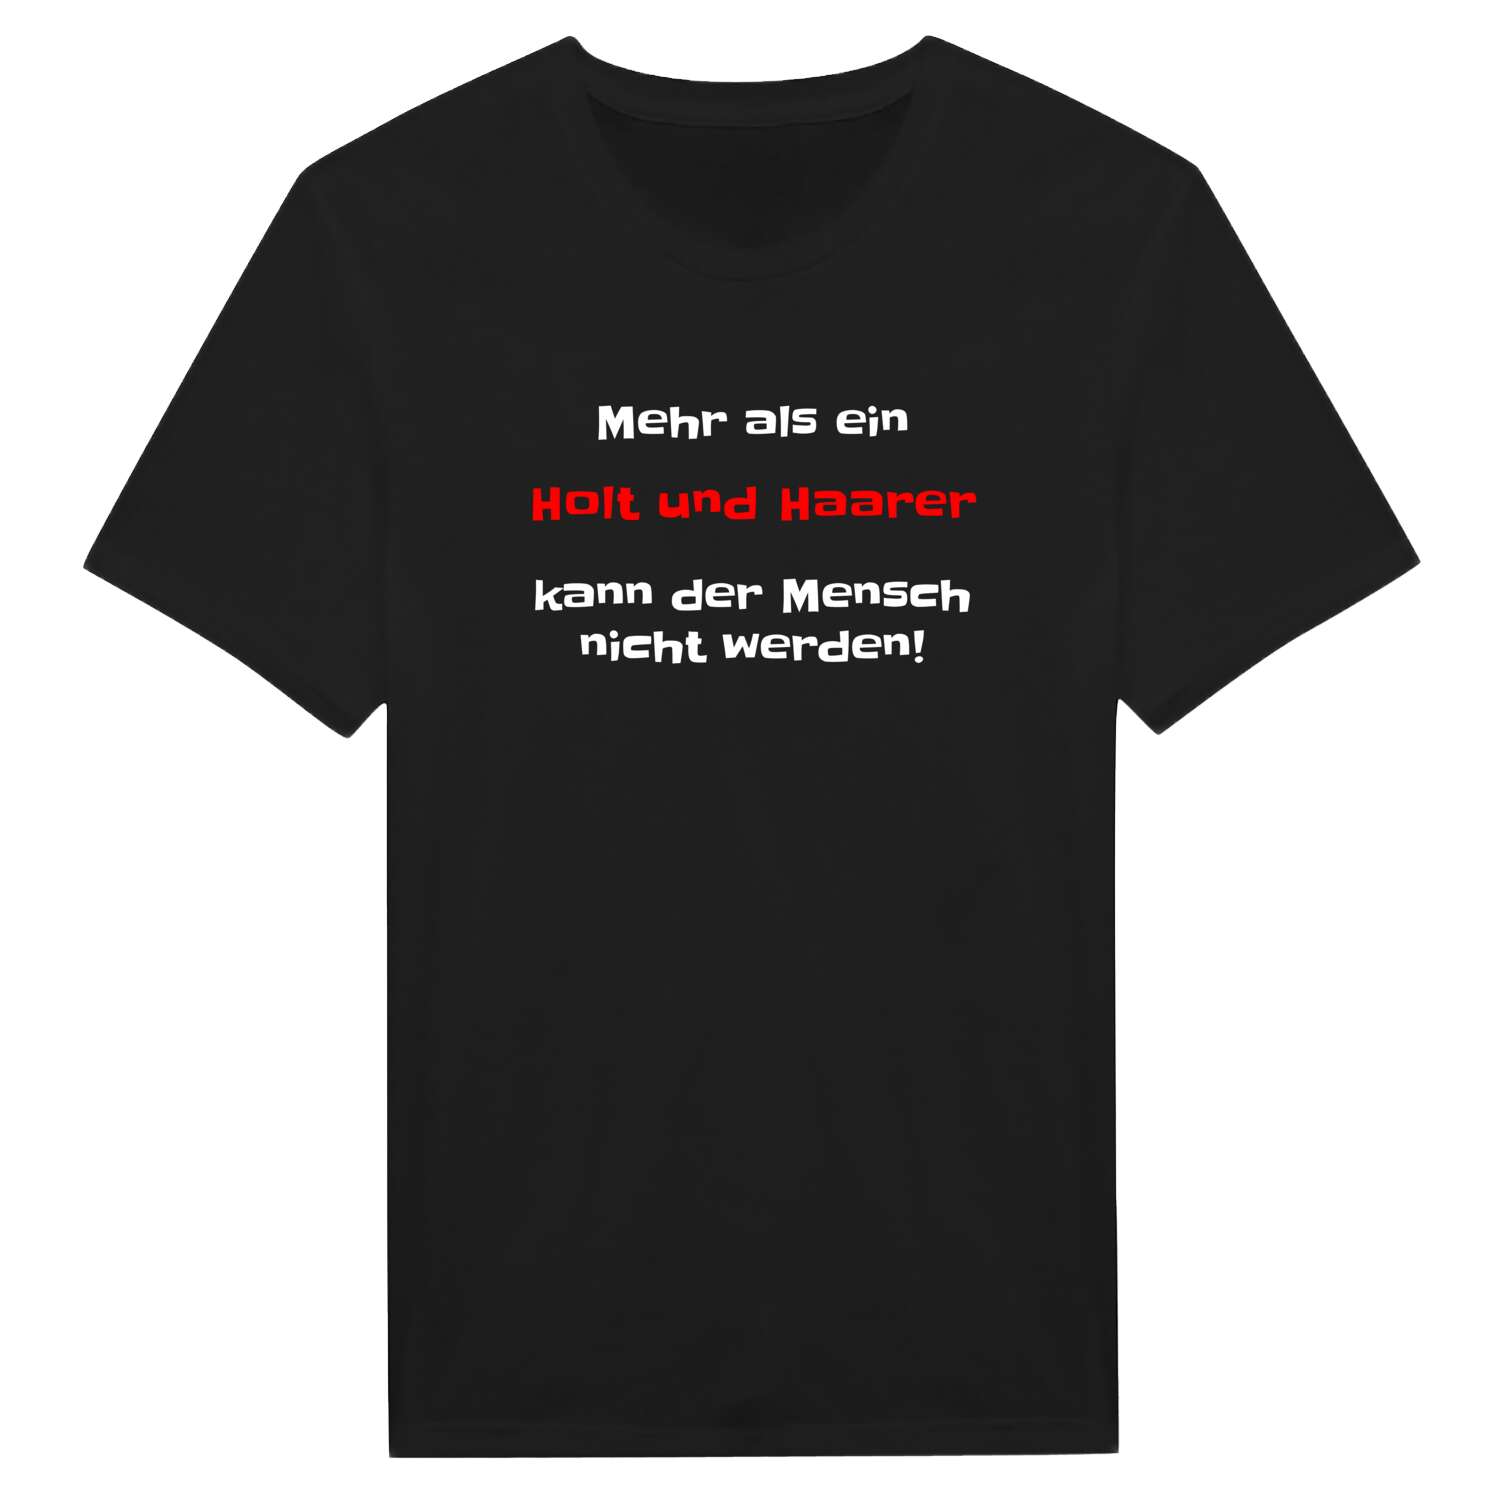 Holt und Haar T-Shirt »Mehr als ein«